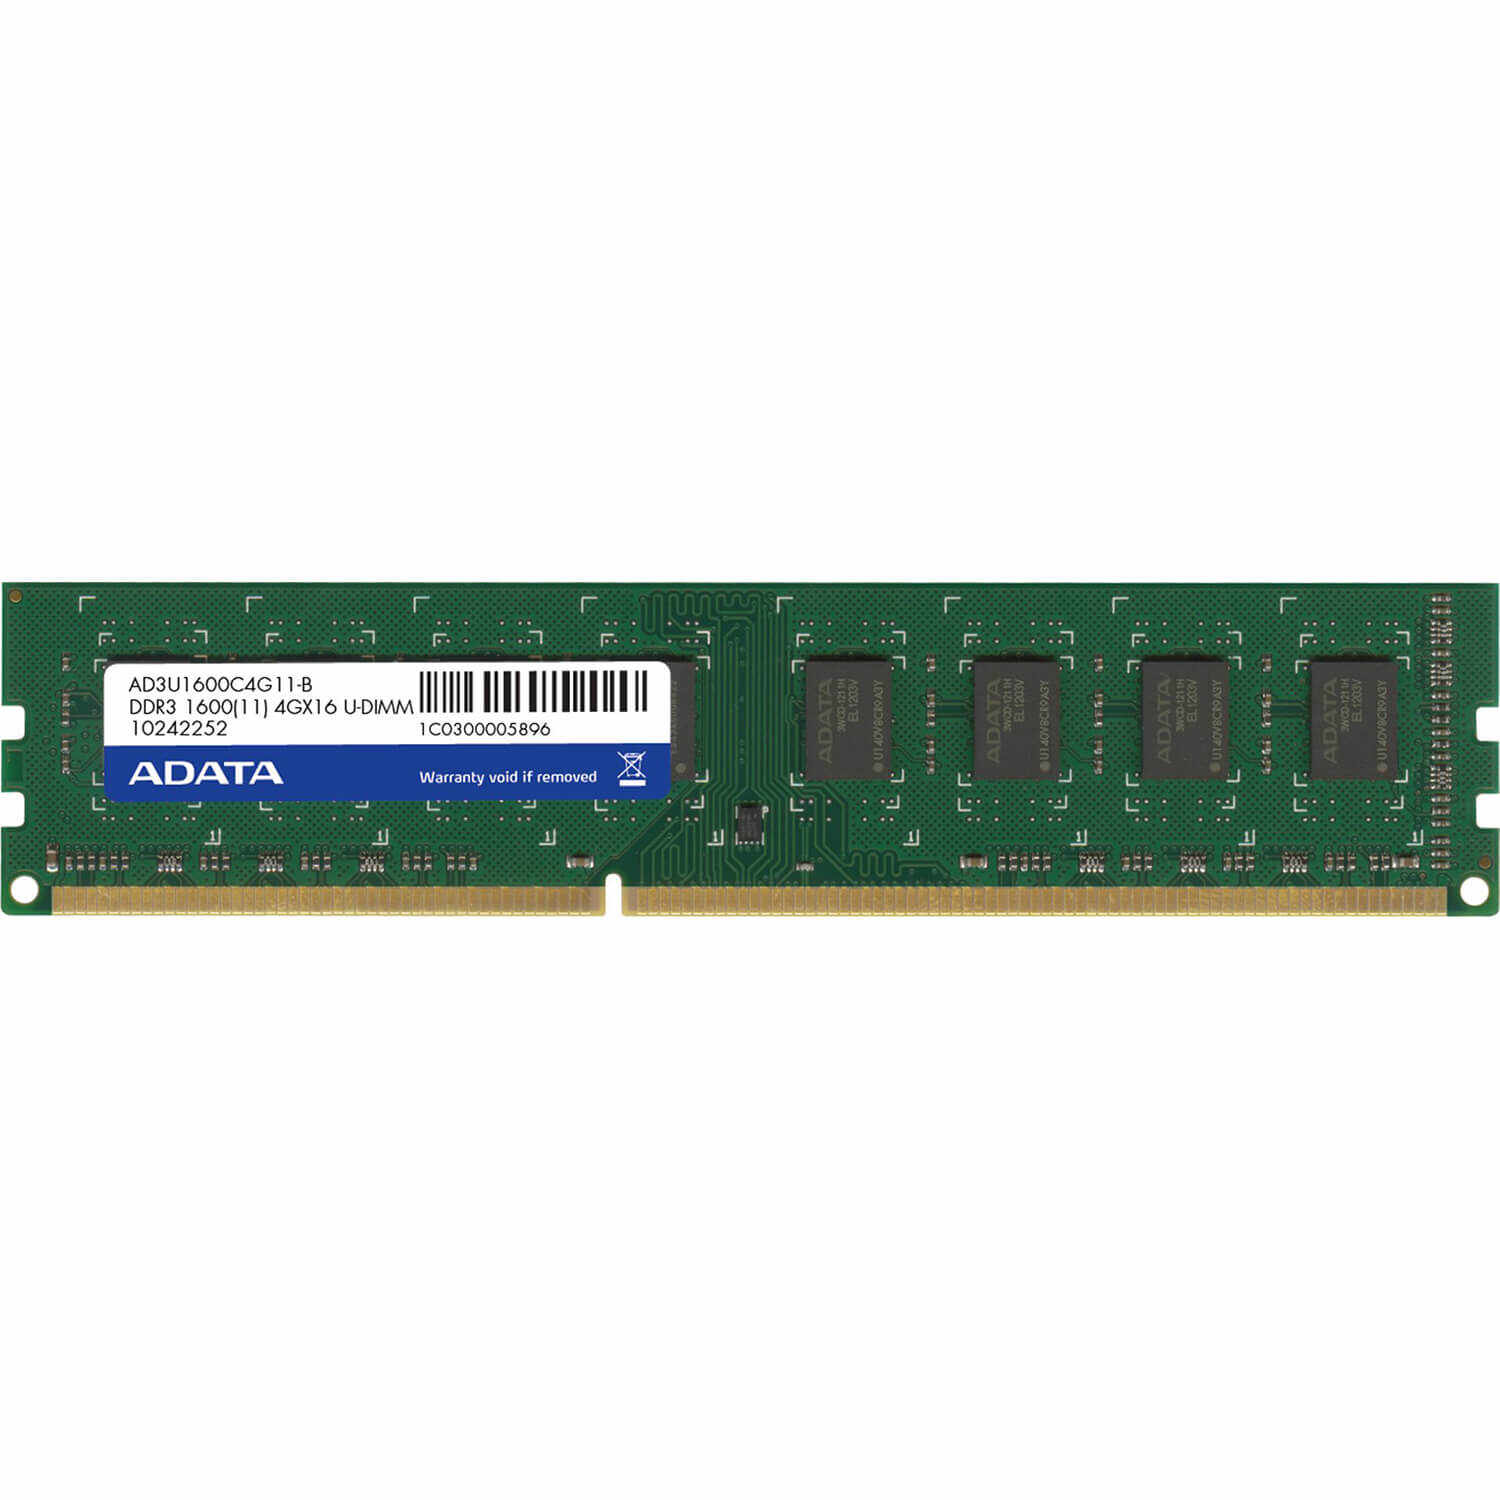 Memorie A-Data AD3U1600W4G11-R, 4GB, DDR3, 1600MHz, CL11